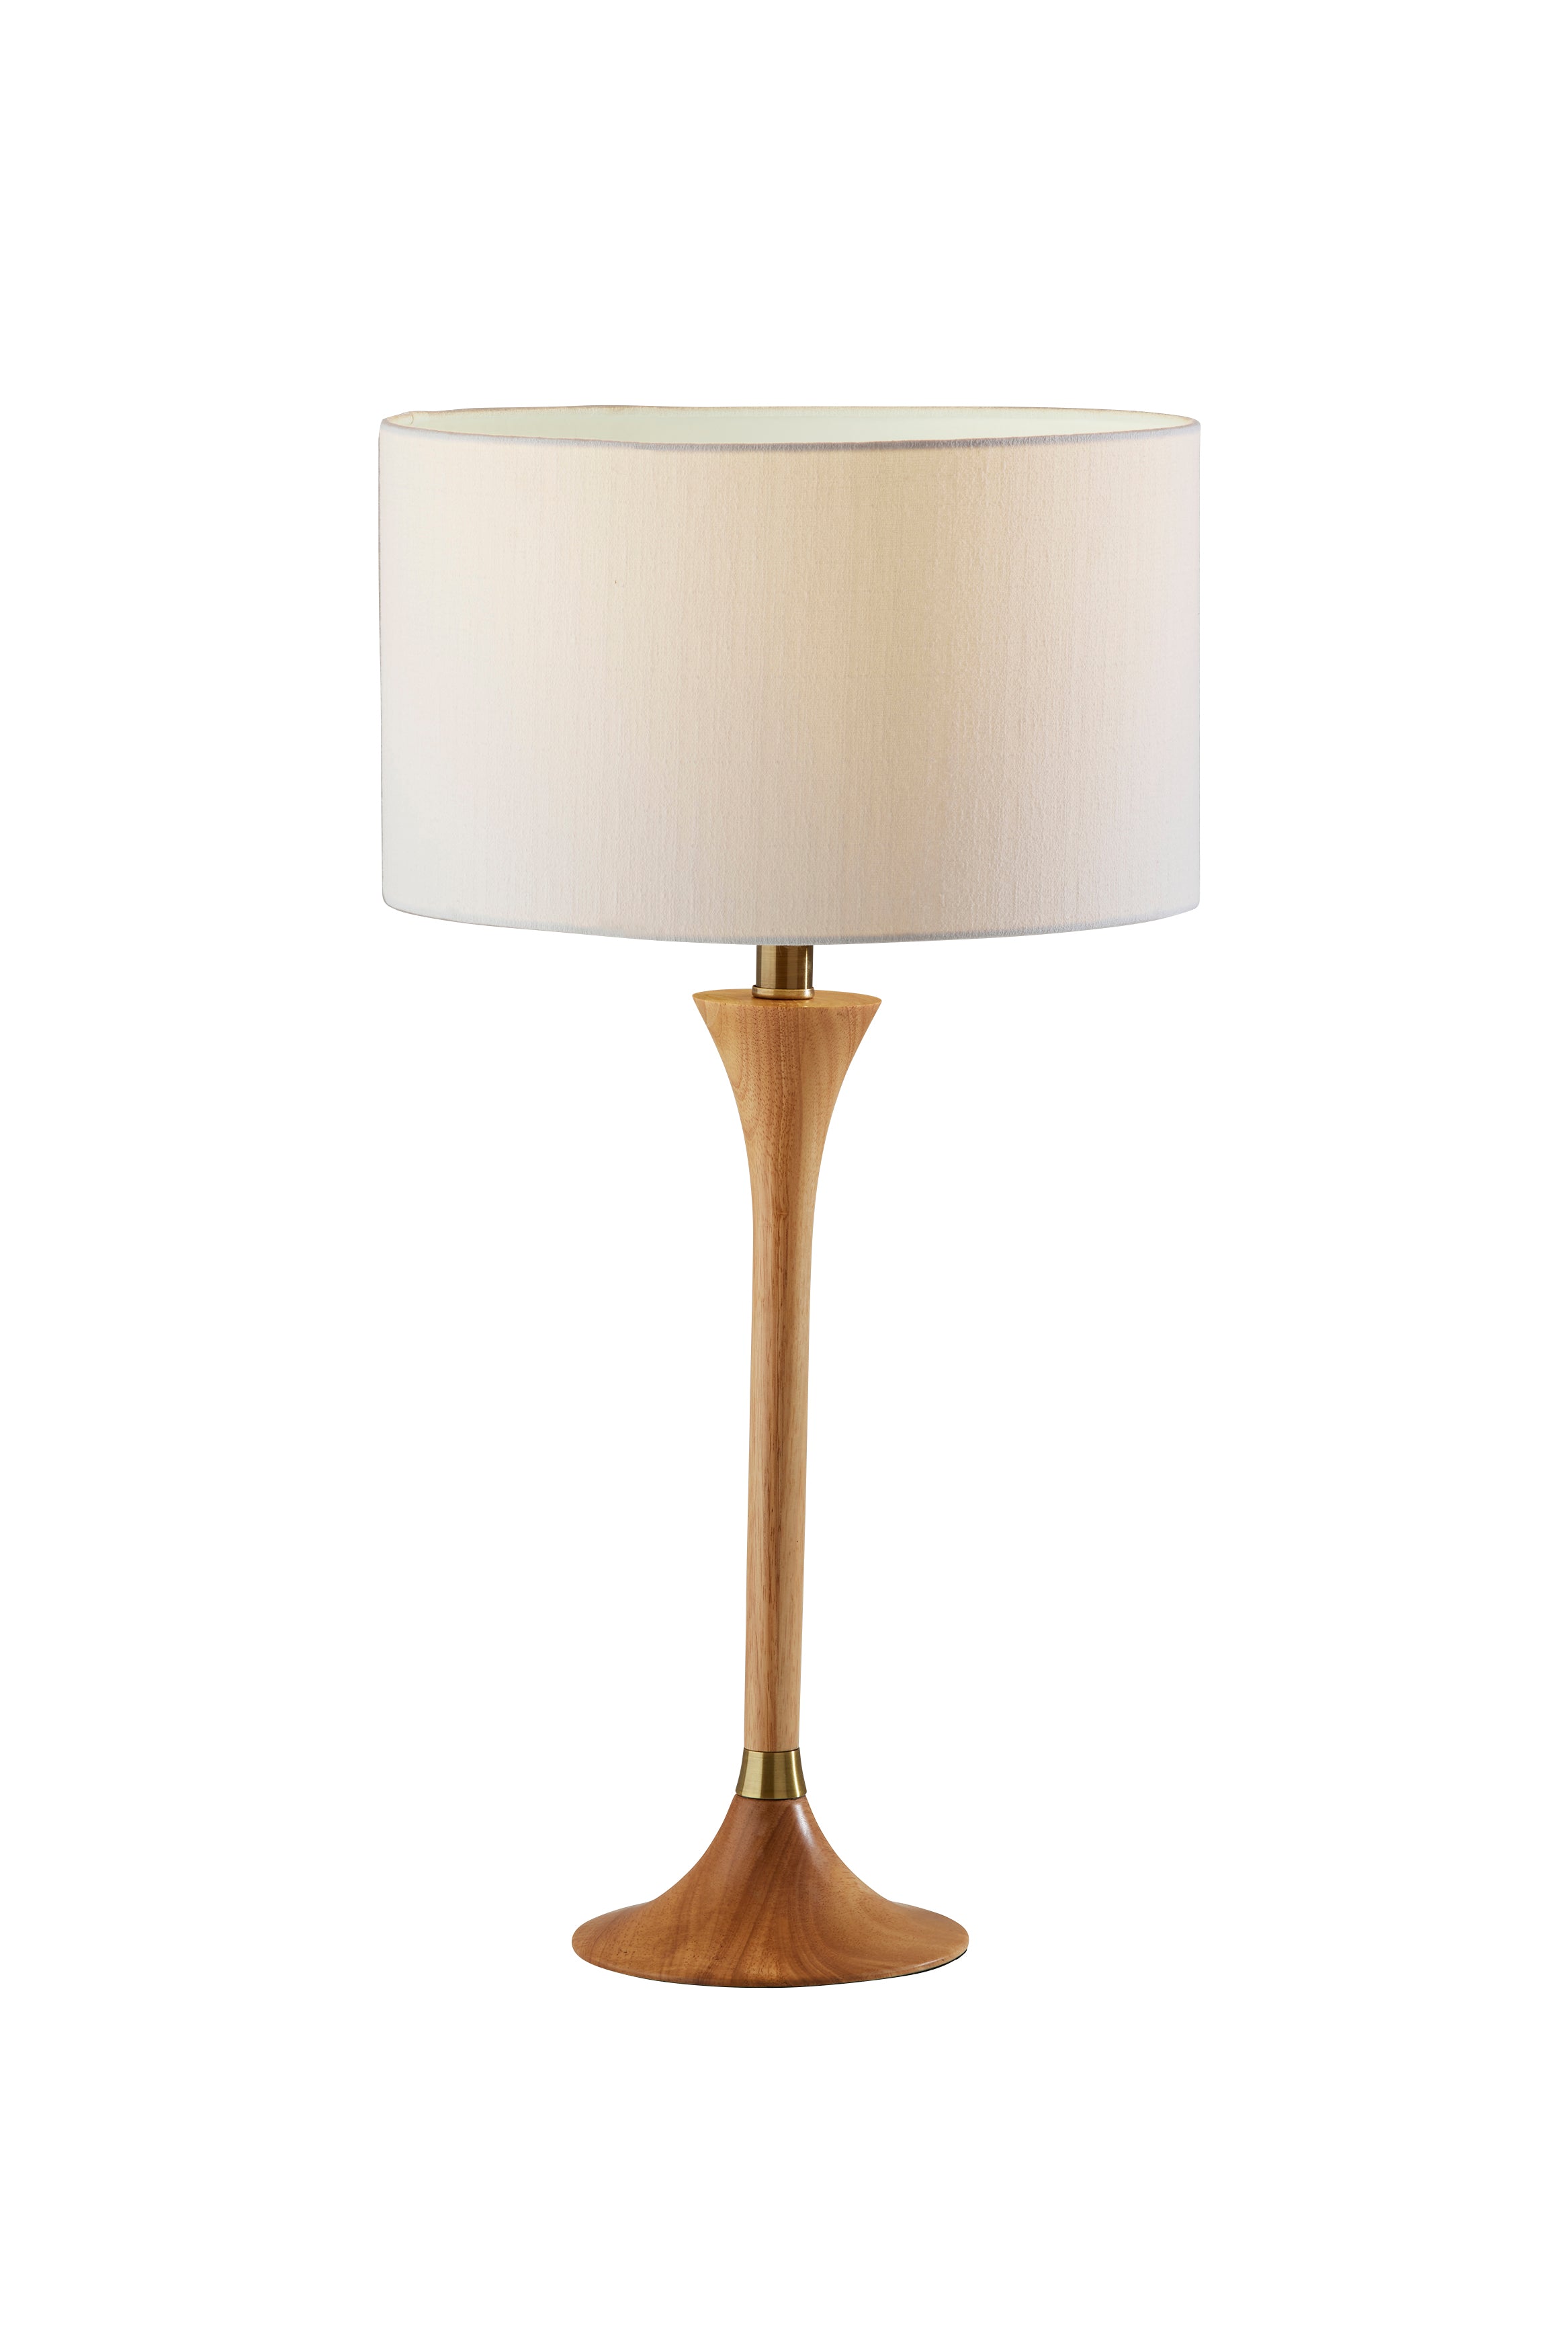 REBECCA Lampe sur table Bois, Or - 1600-12 | ADESSO